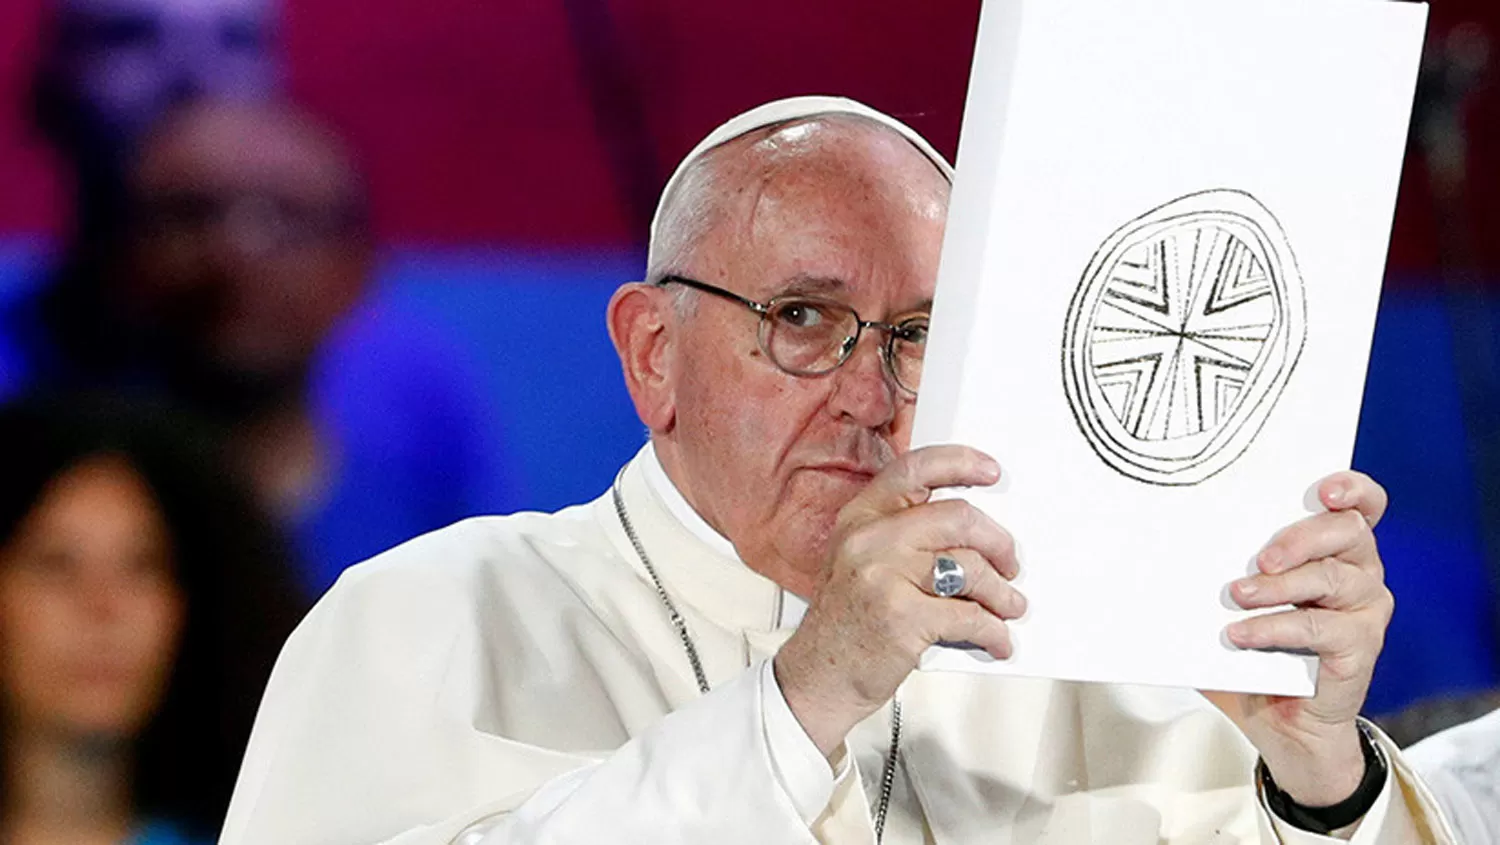 SIN PALABRAS. El Papa Francisco no opinará sobre los dichos del ex nuncio.